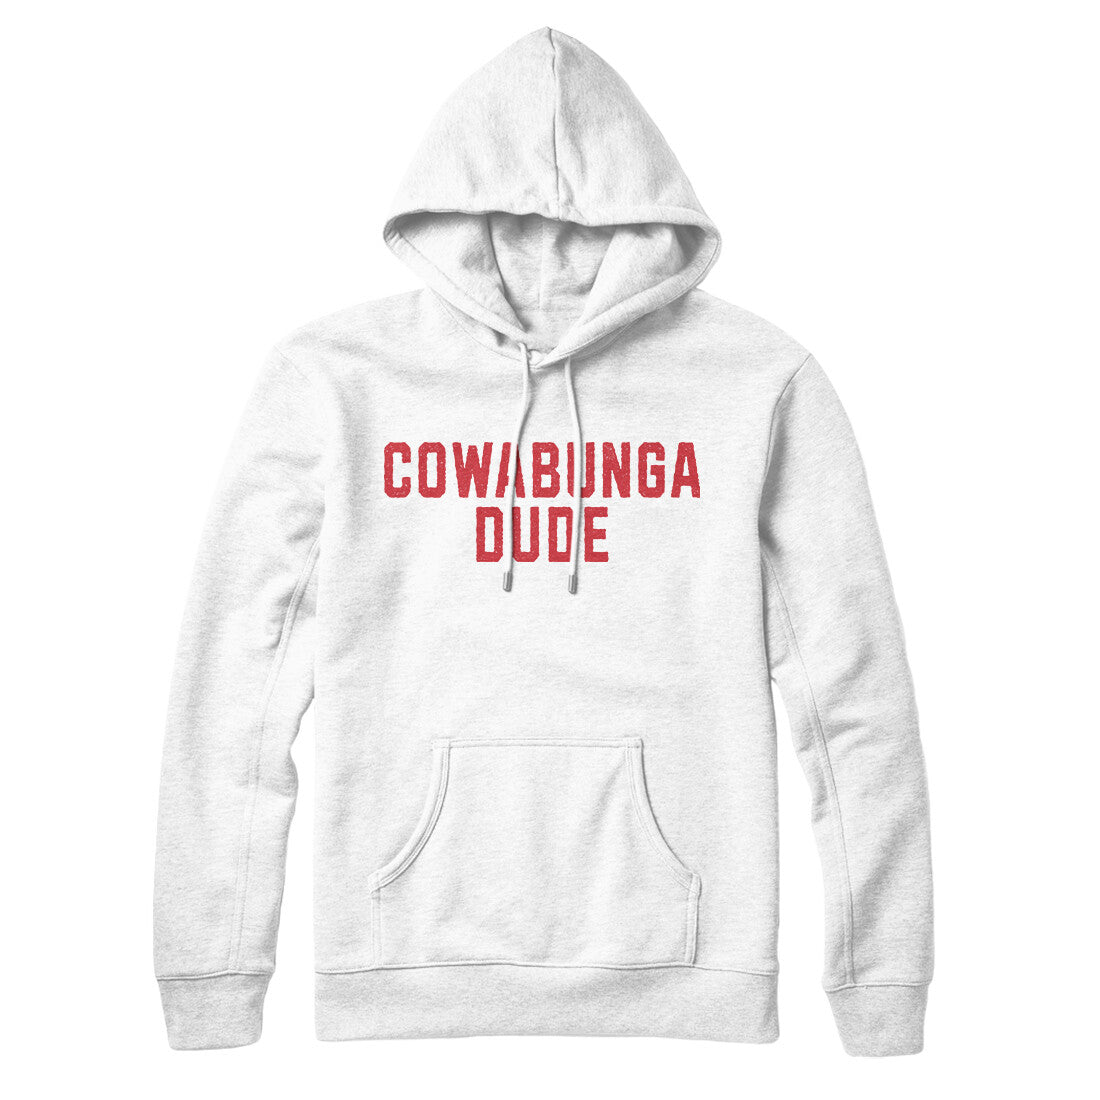 Cowabunga Dude in White Color